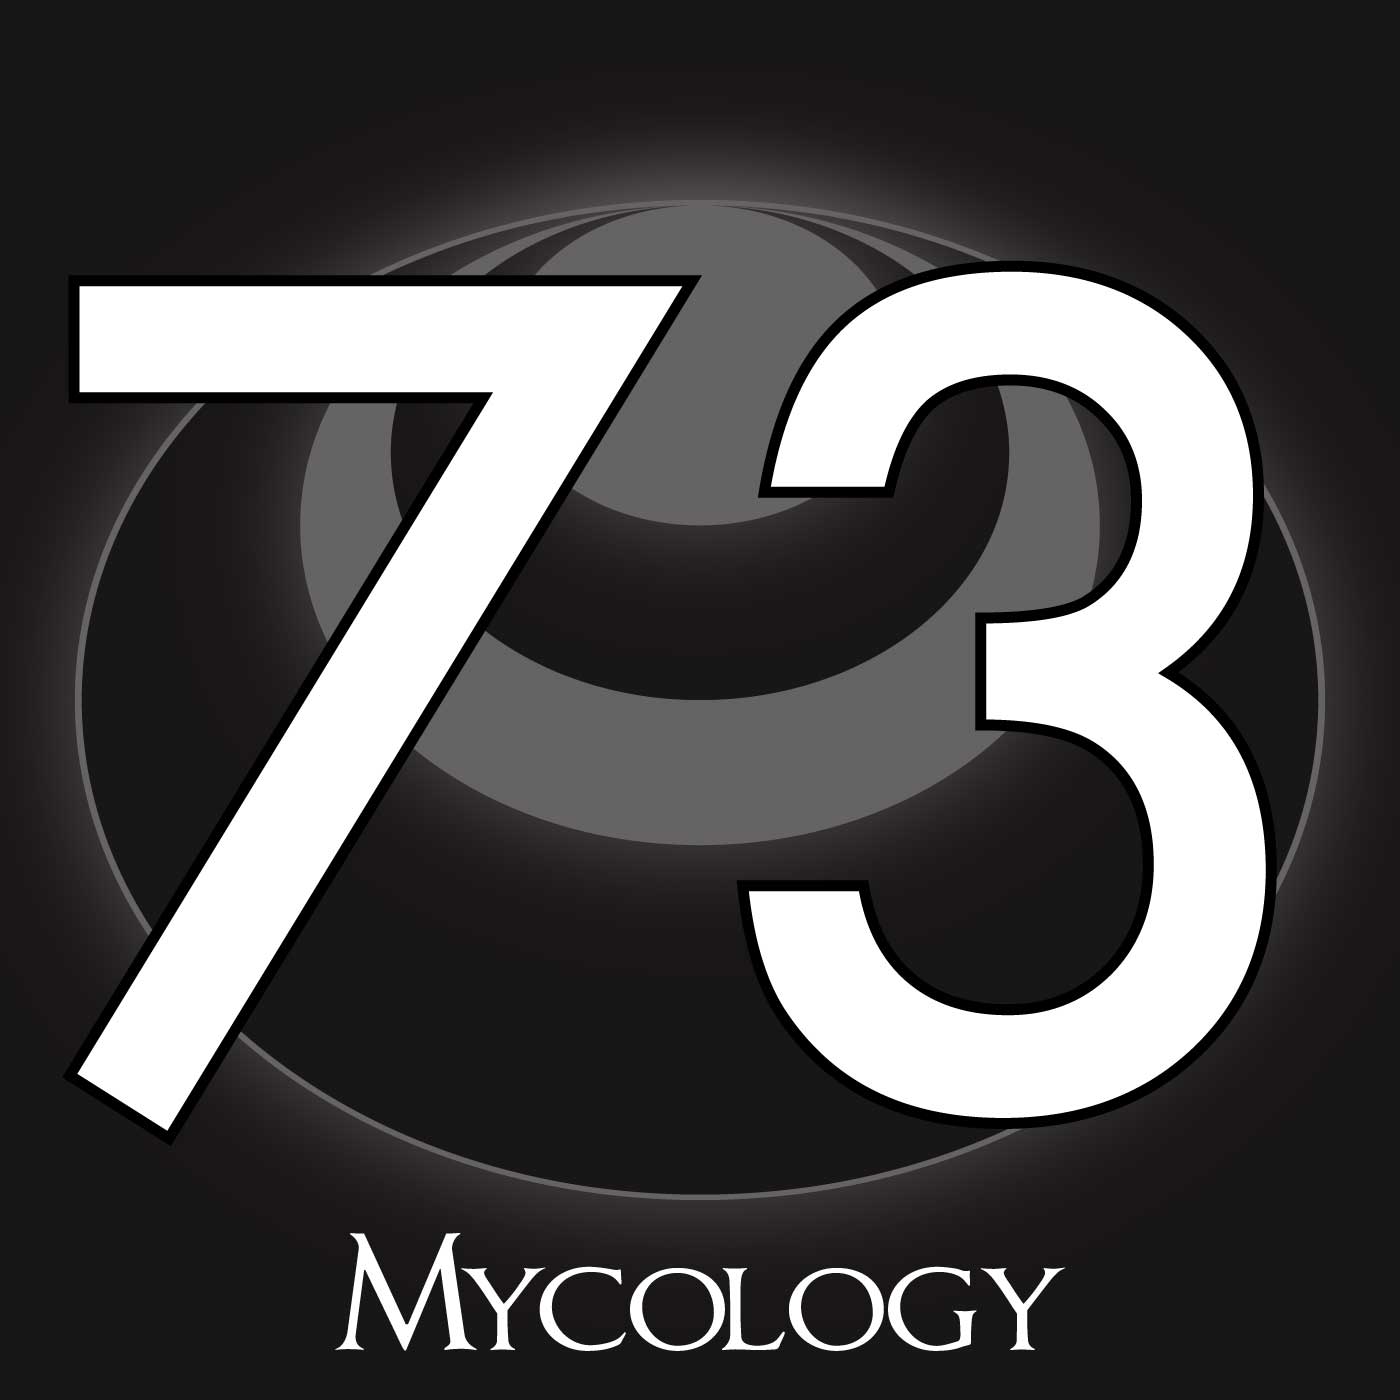 73 – Mycology